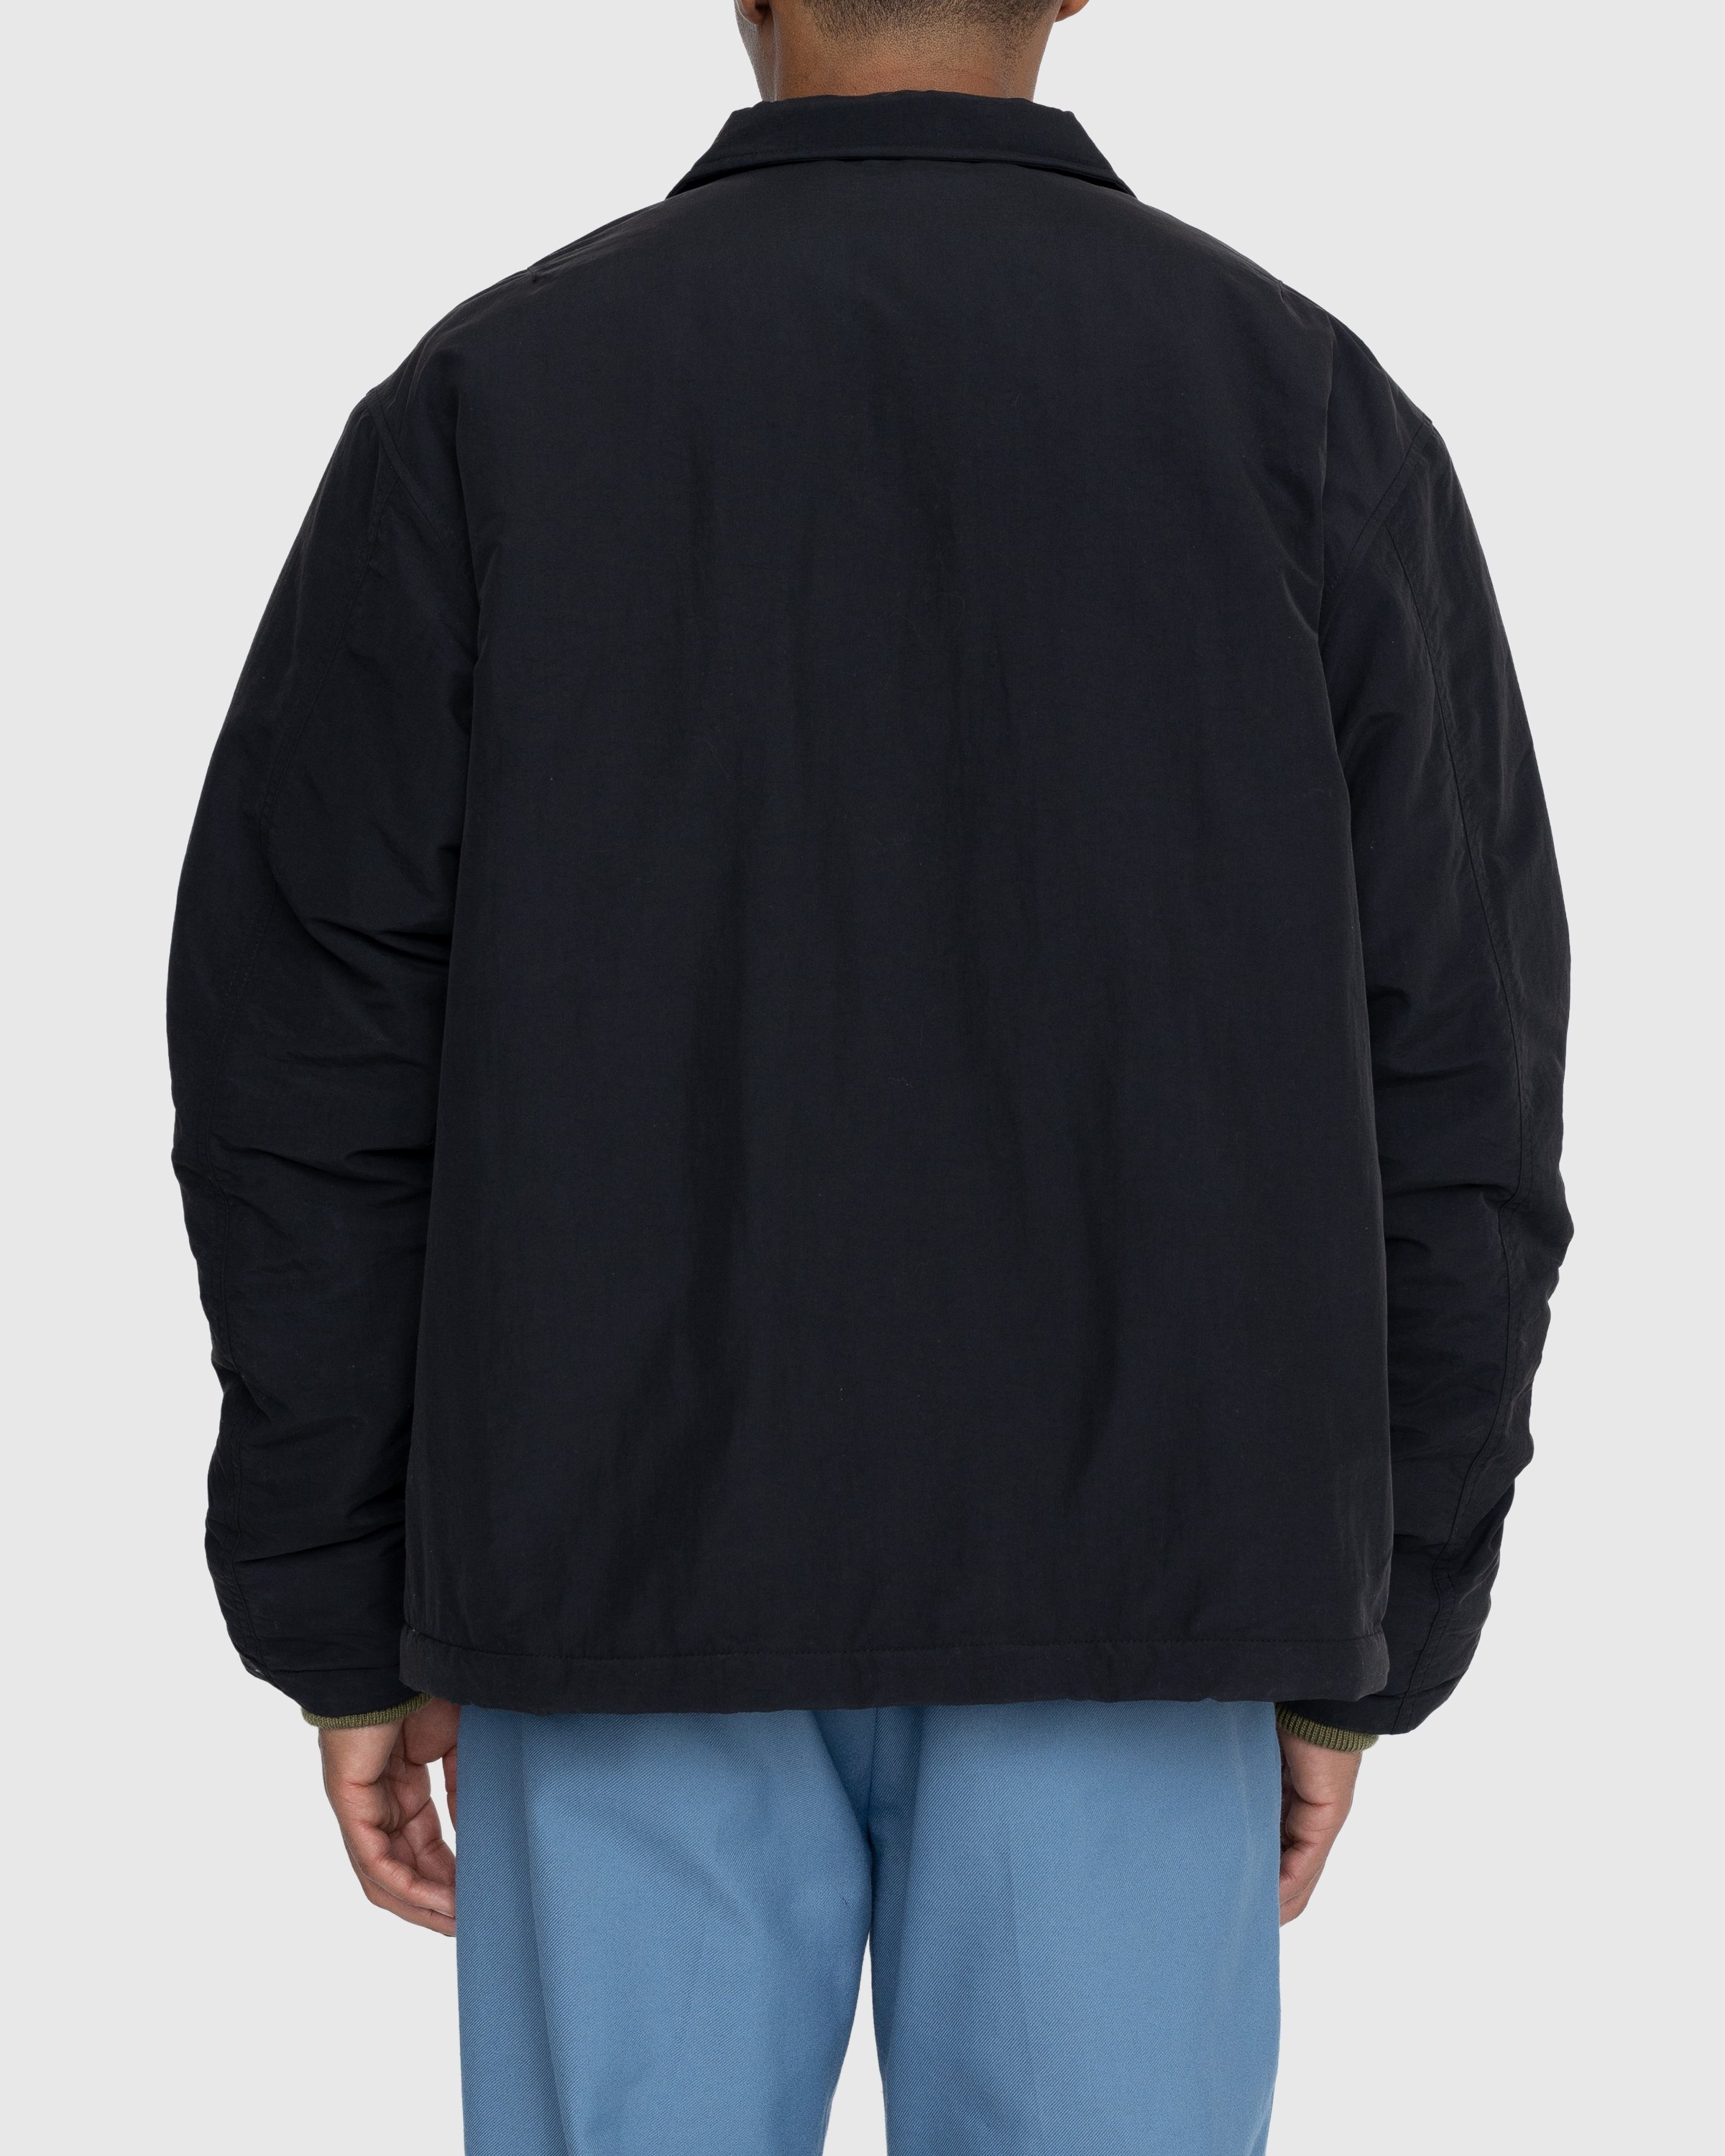 Highsnobiety – Insulated Coach Jacket Black - Jackets - Black - Image 4